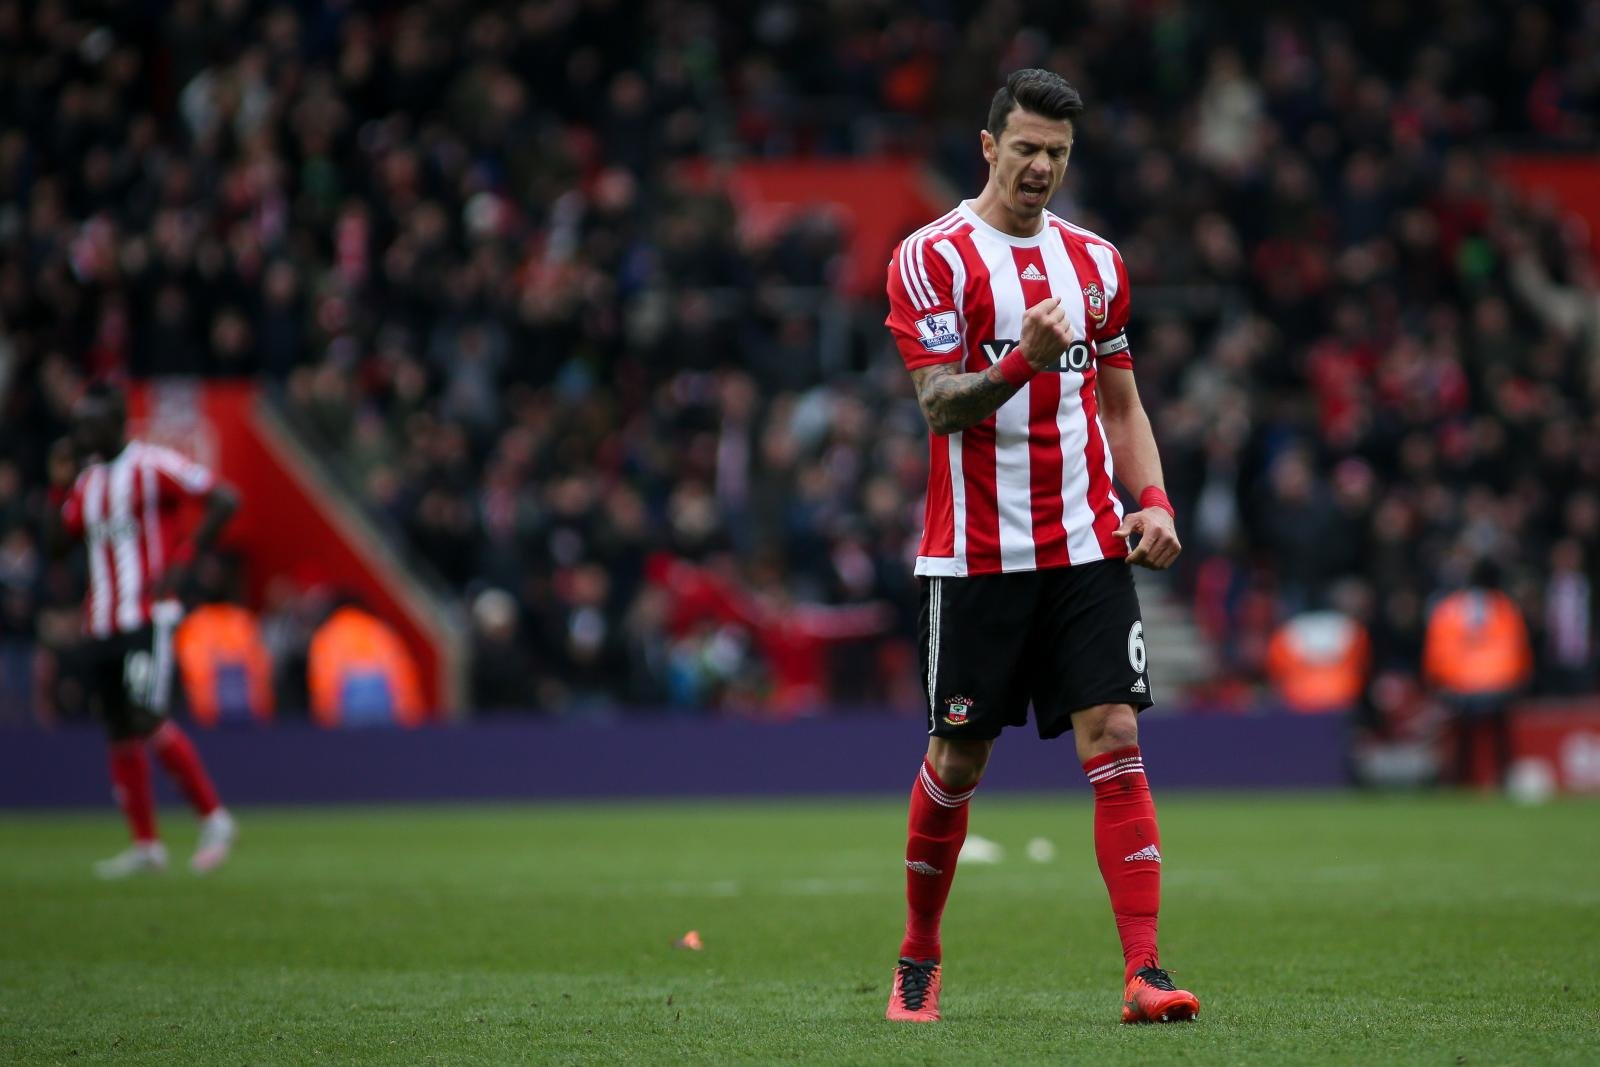 Southampton hero praises debutant after Man City draw